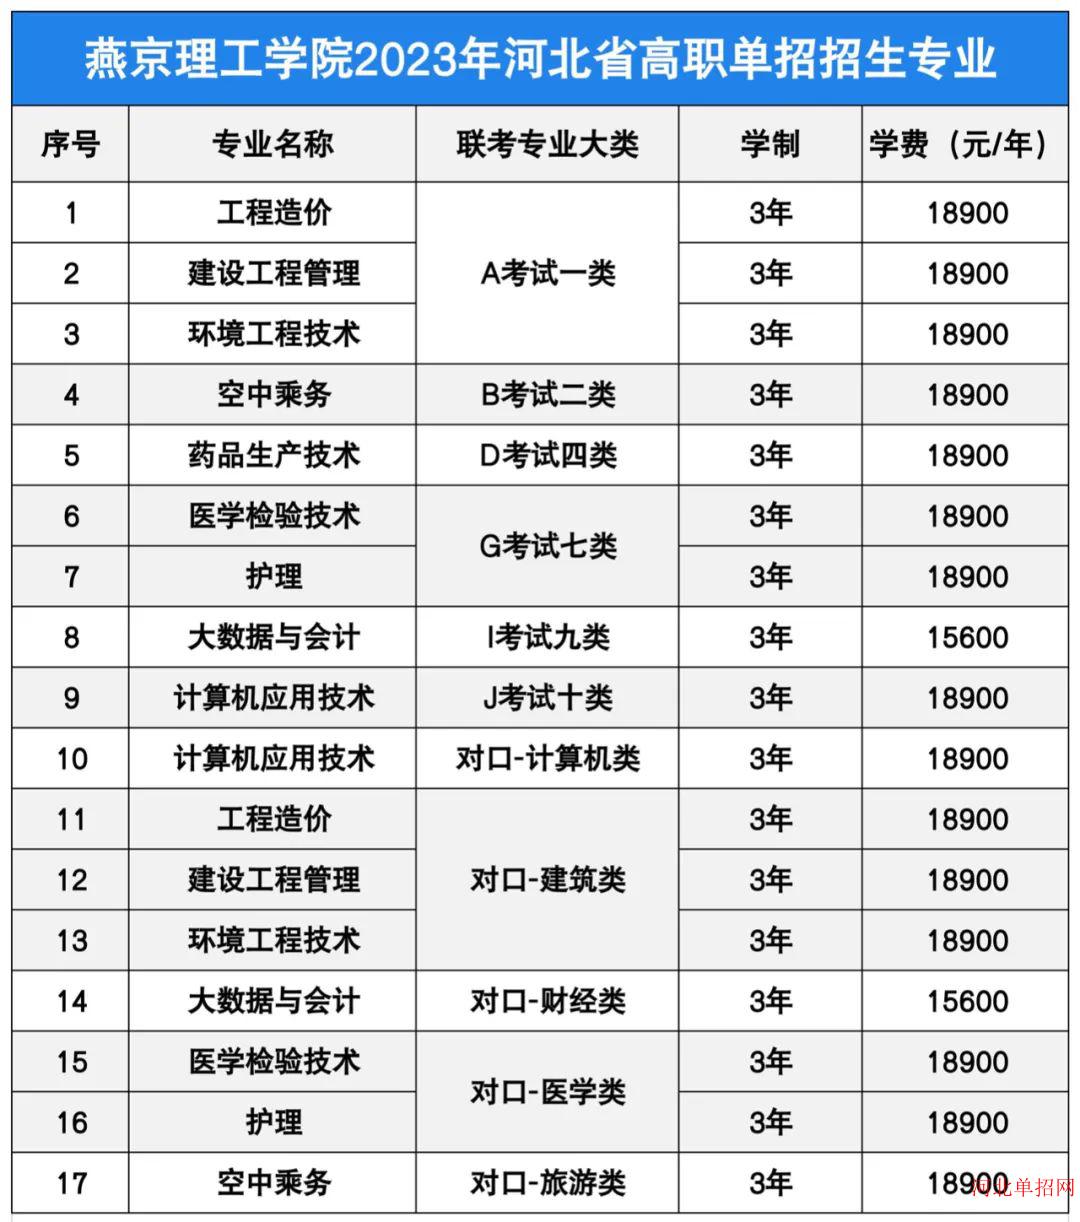 燕京理工学院2023年单招招生简章 图1